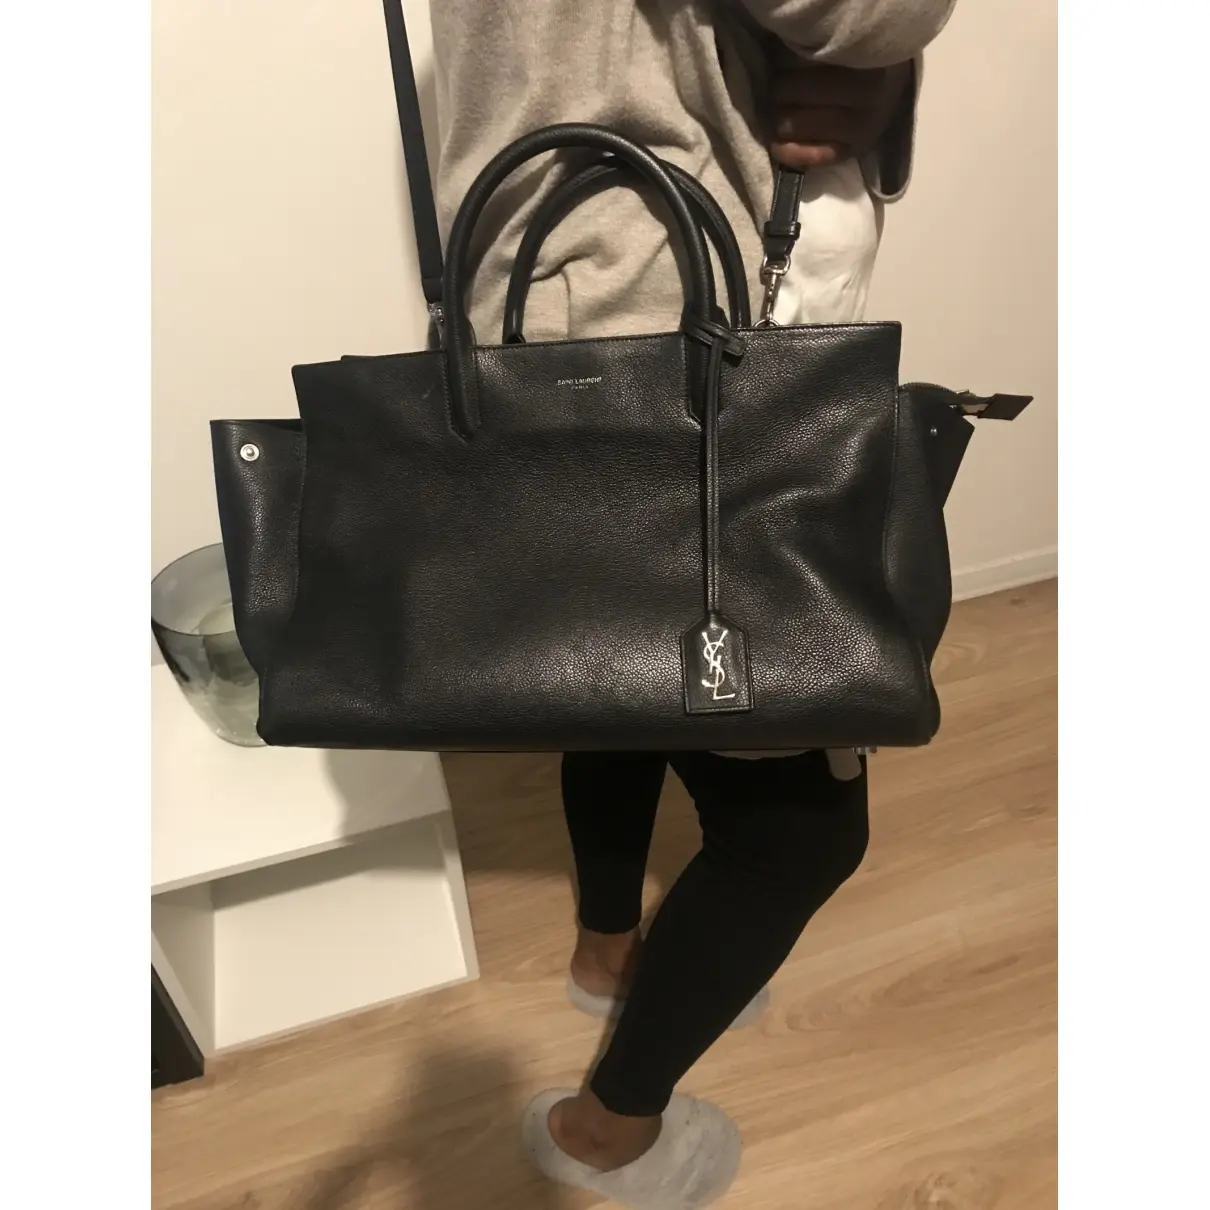 Buy Saint Laurent Cabas Rive Gauche leather handbag online